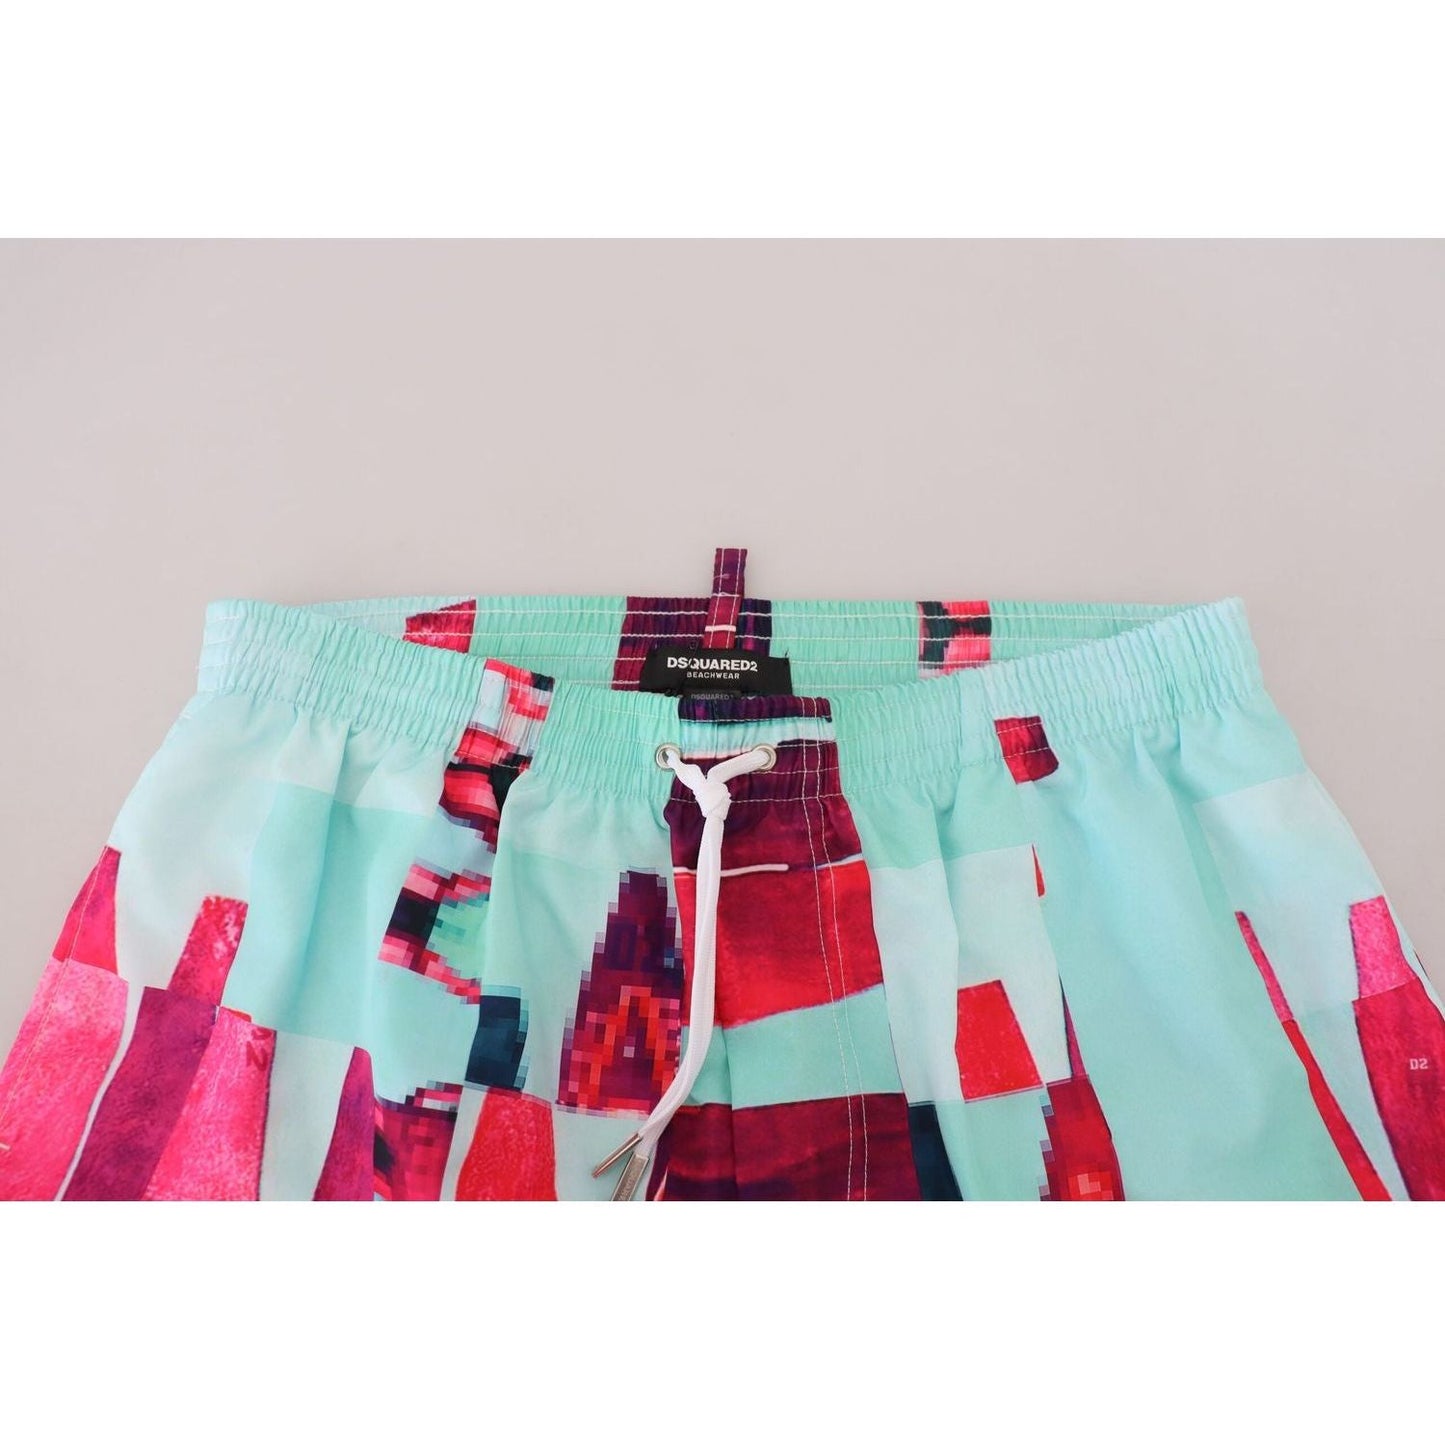 Dsquared² Multicolor Printed Swim Shorts Boxer multicolor-printed-beachwear-shorts-swimwear IMG_6263-scaled-60ad91b0-a04.jpg